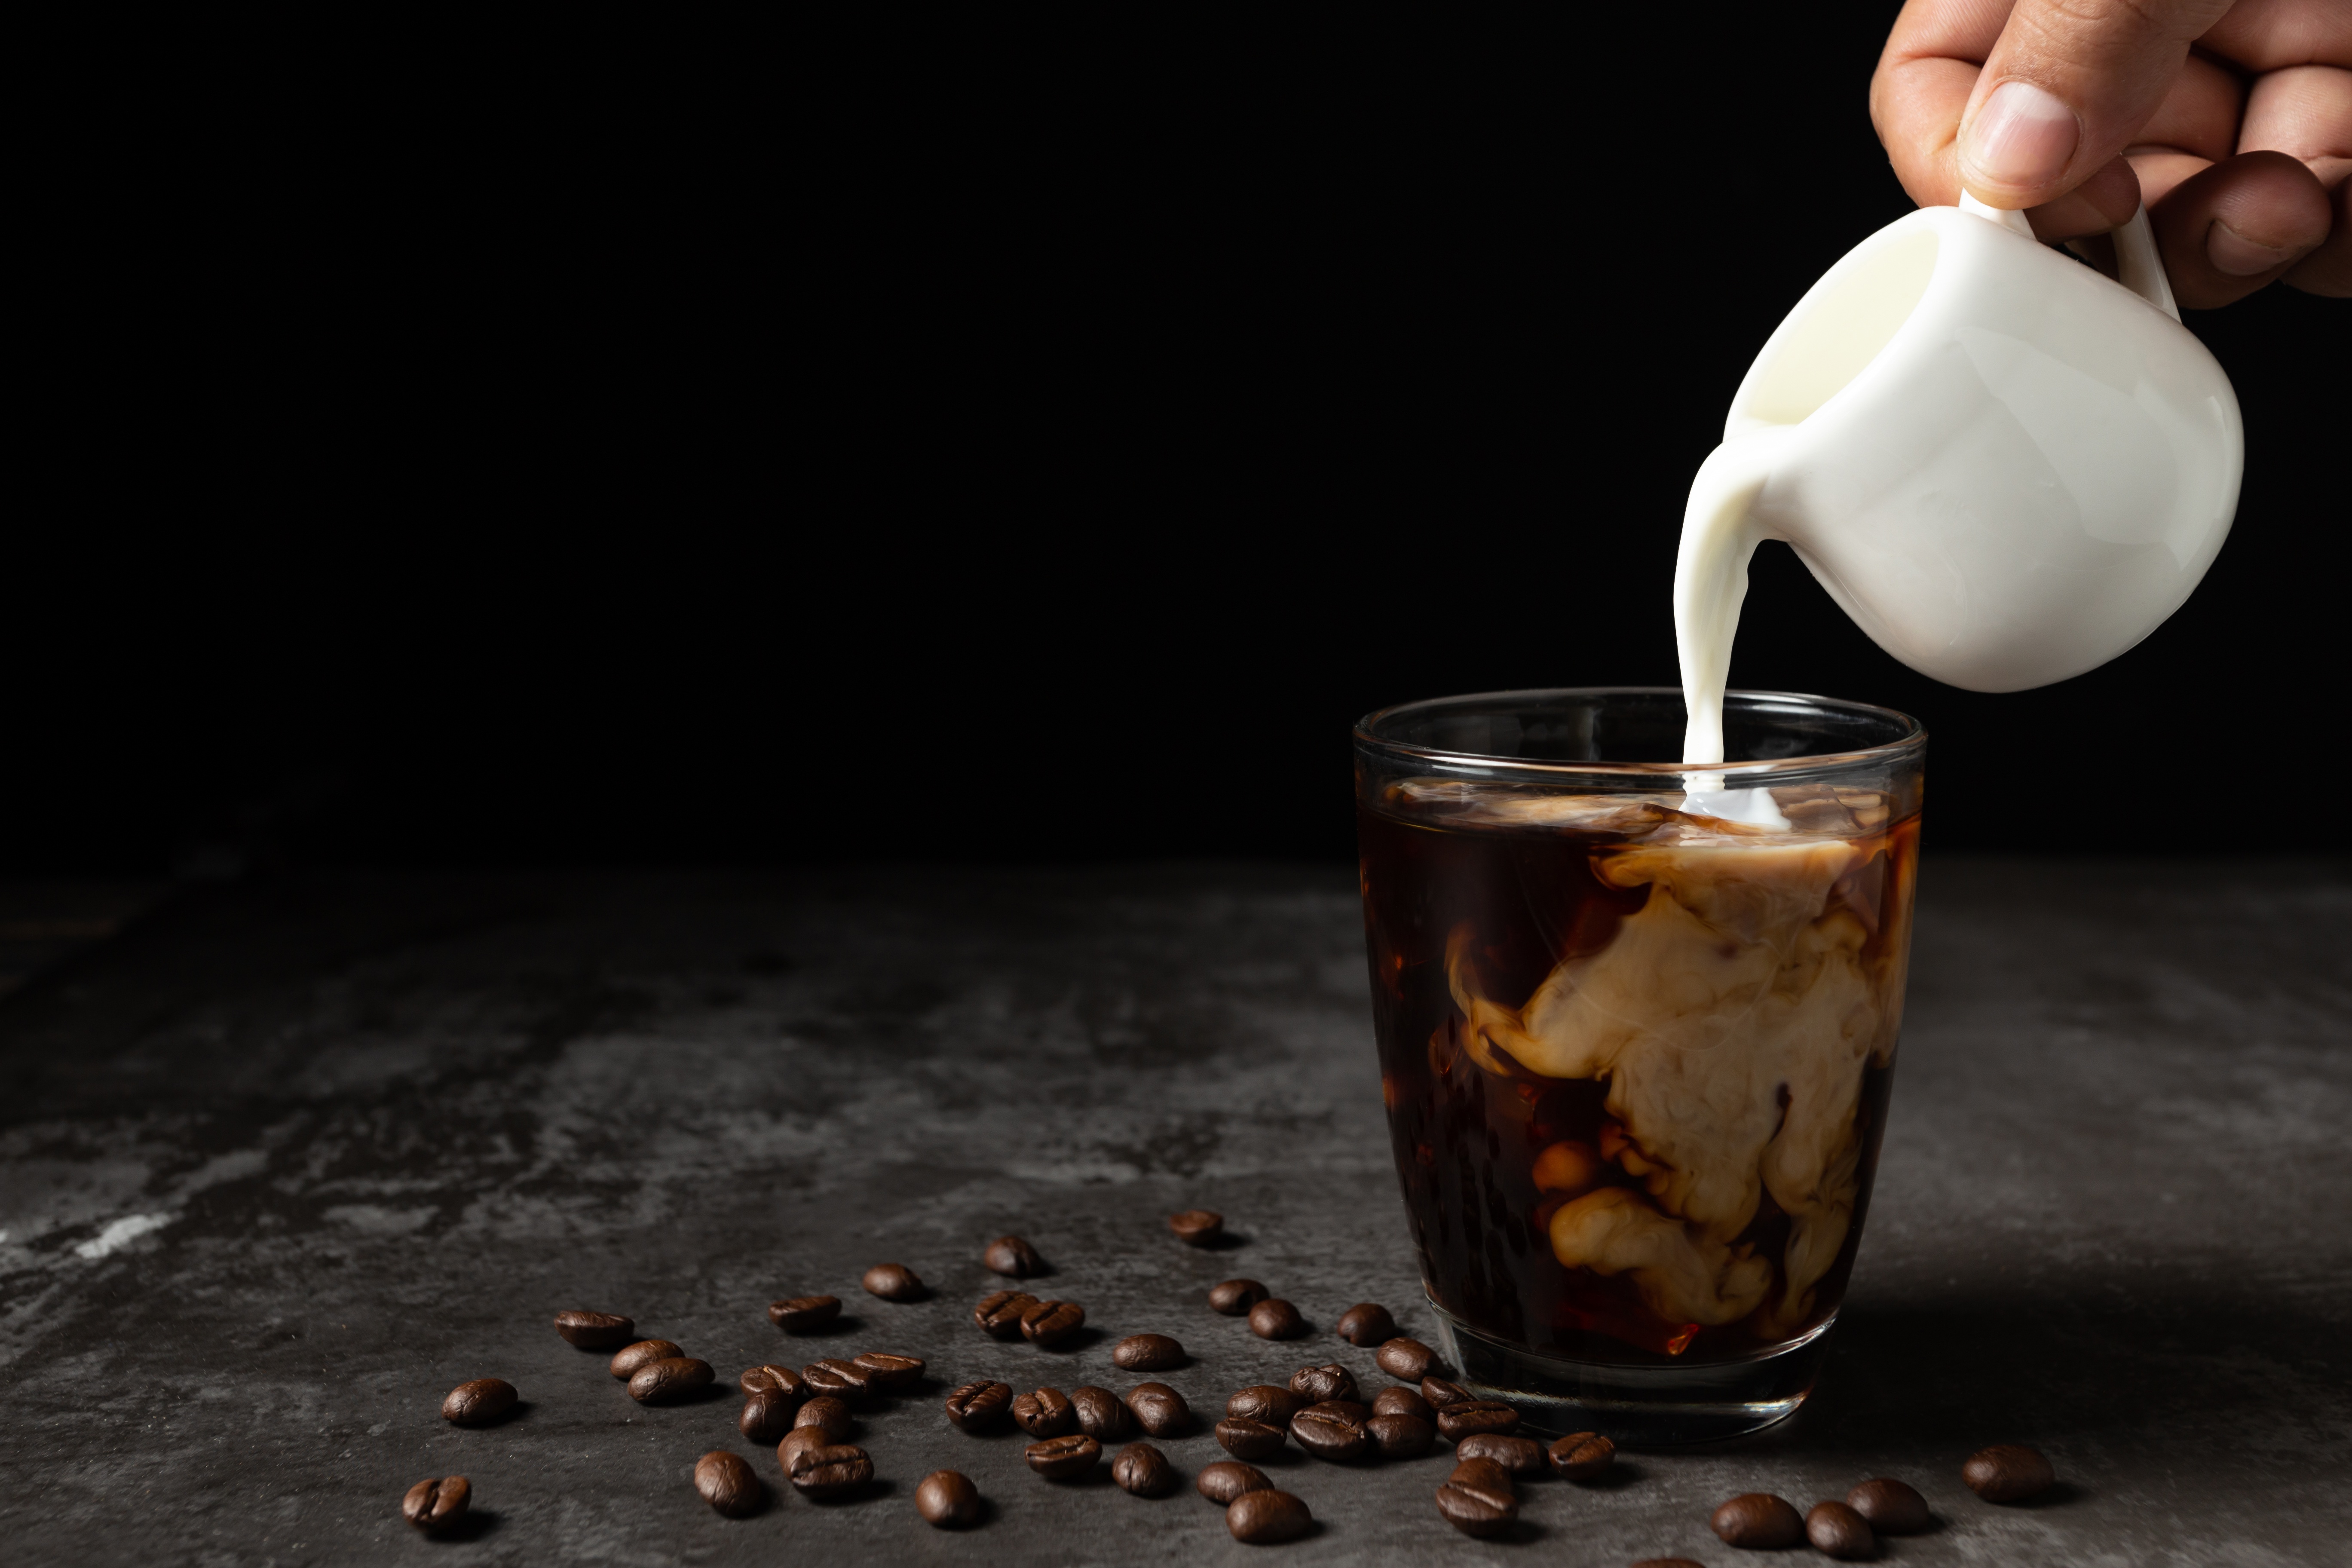 Milky coffee. Кофе. Наливает кофе. Кофе с молоком. Кофе на темном фоне.